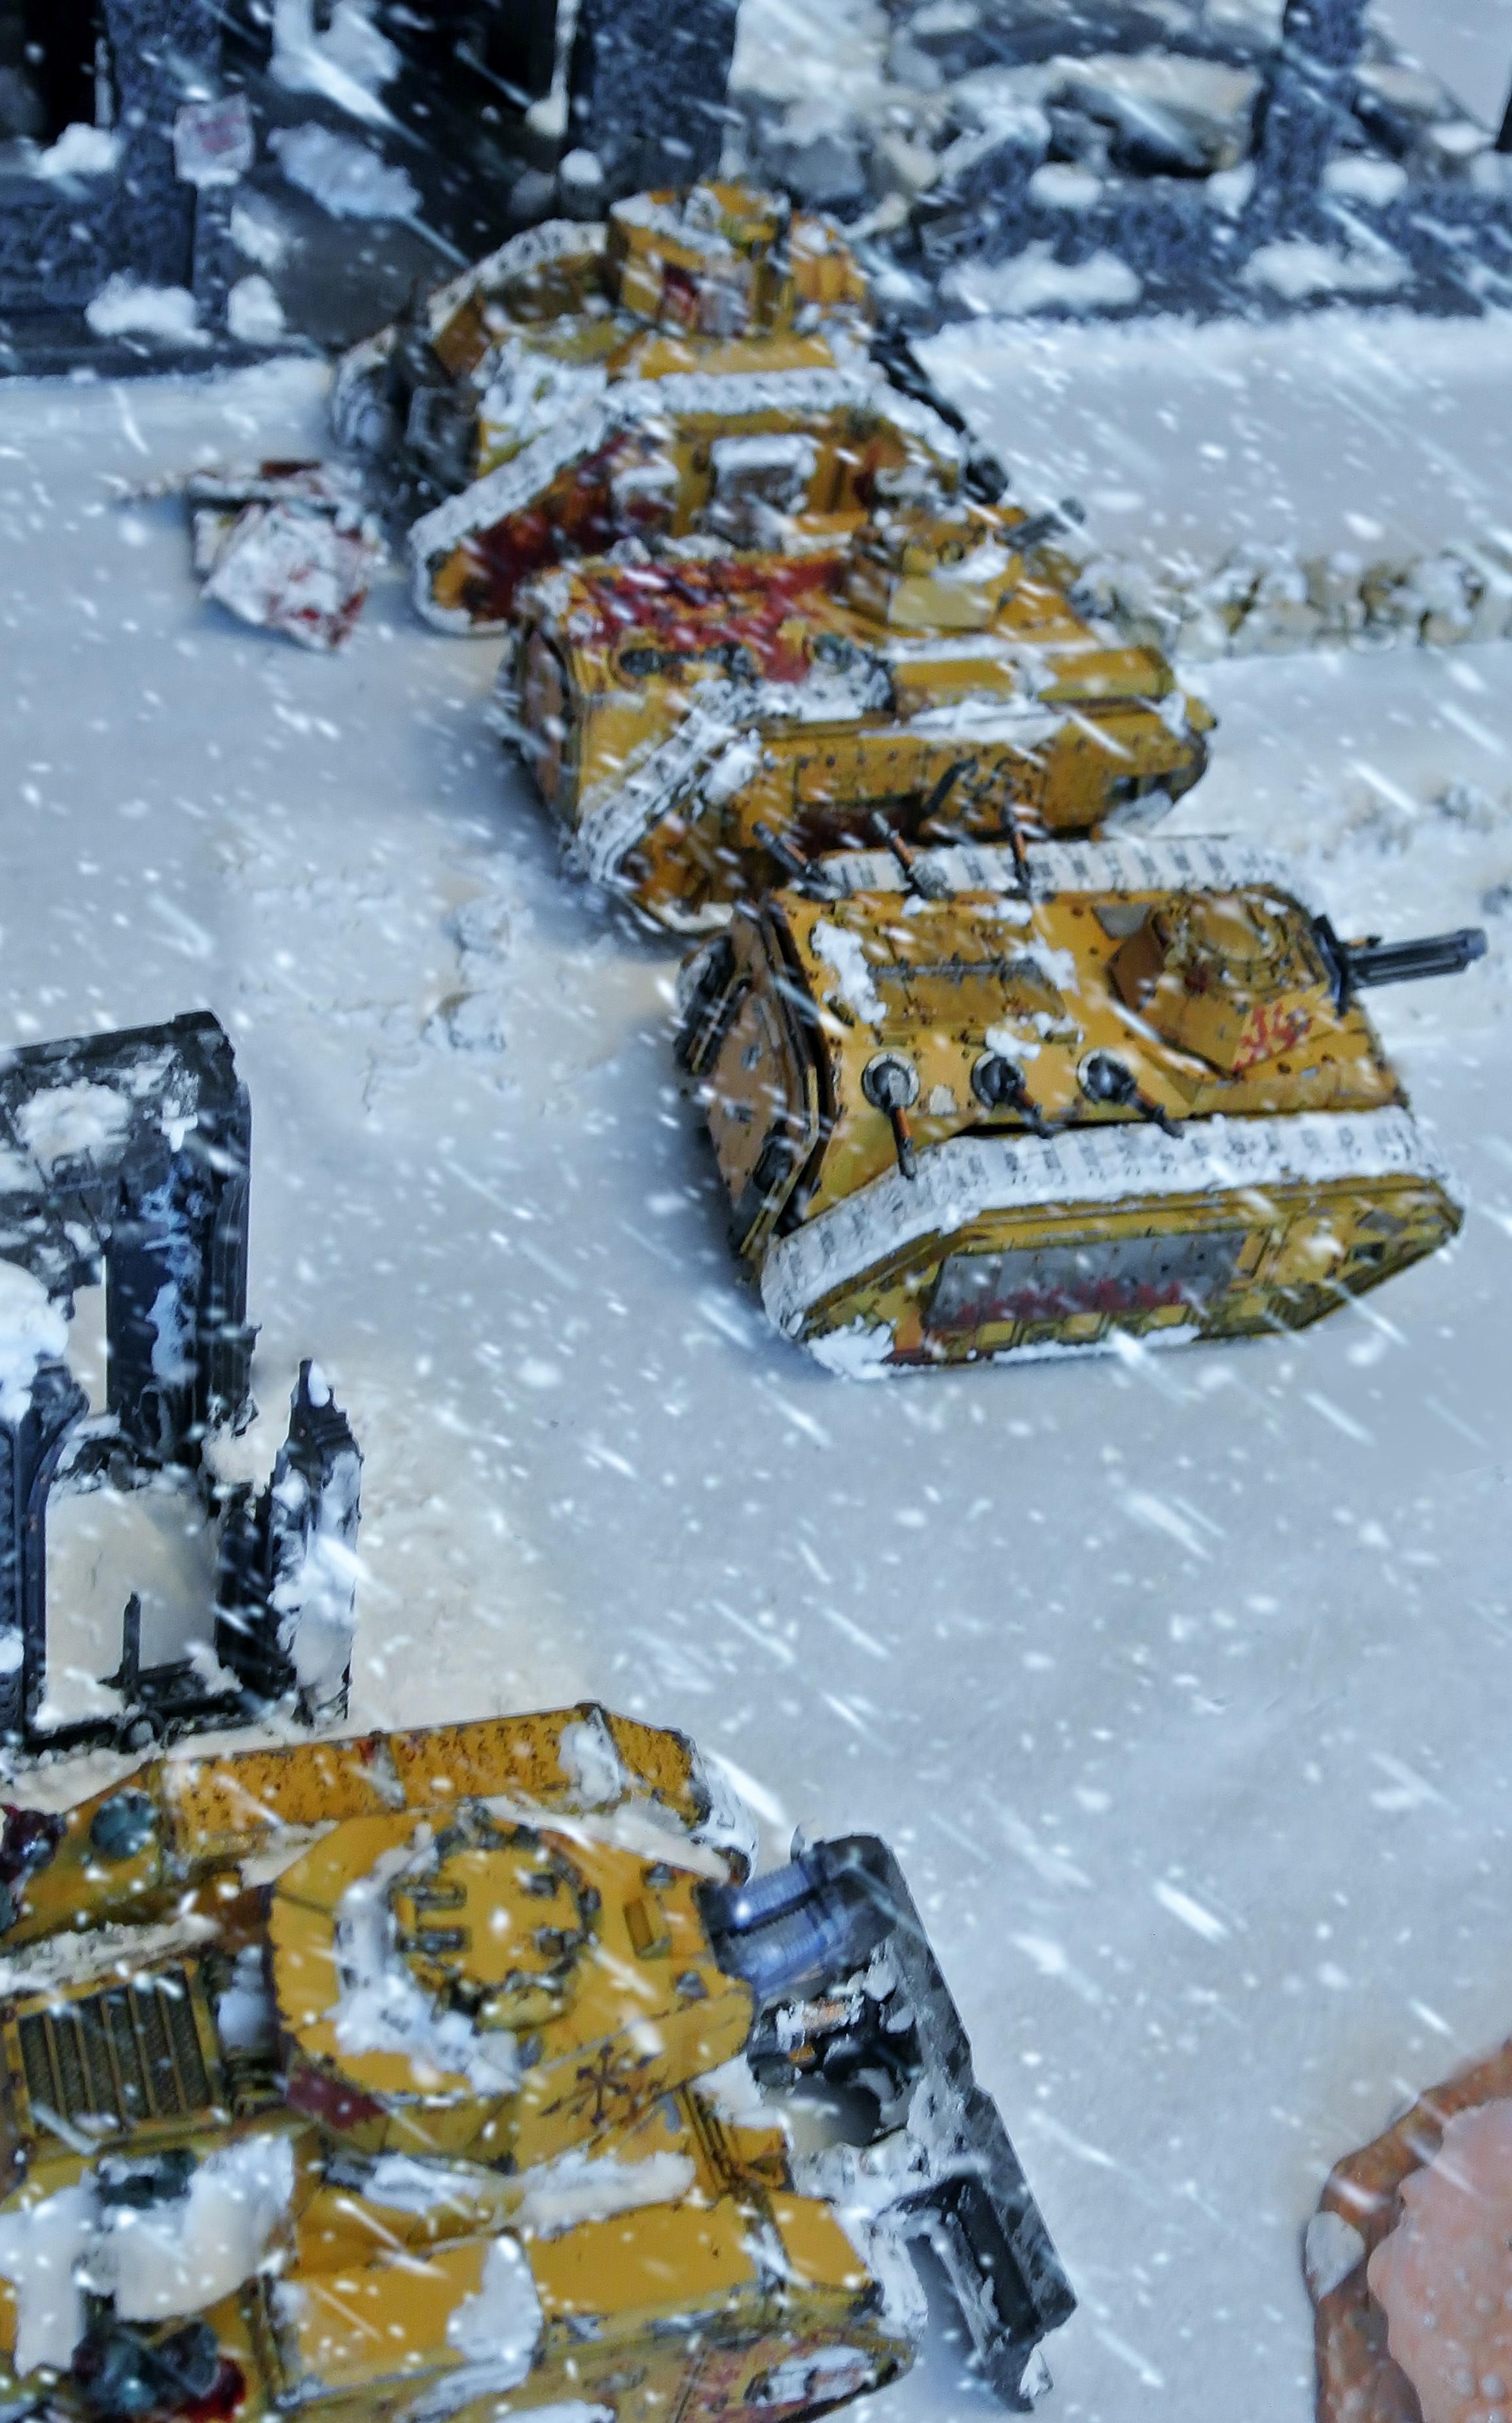 Imperial Guard, Imperium, Snow, Tank, Winter